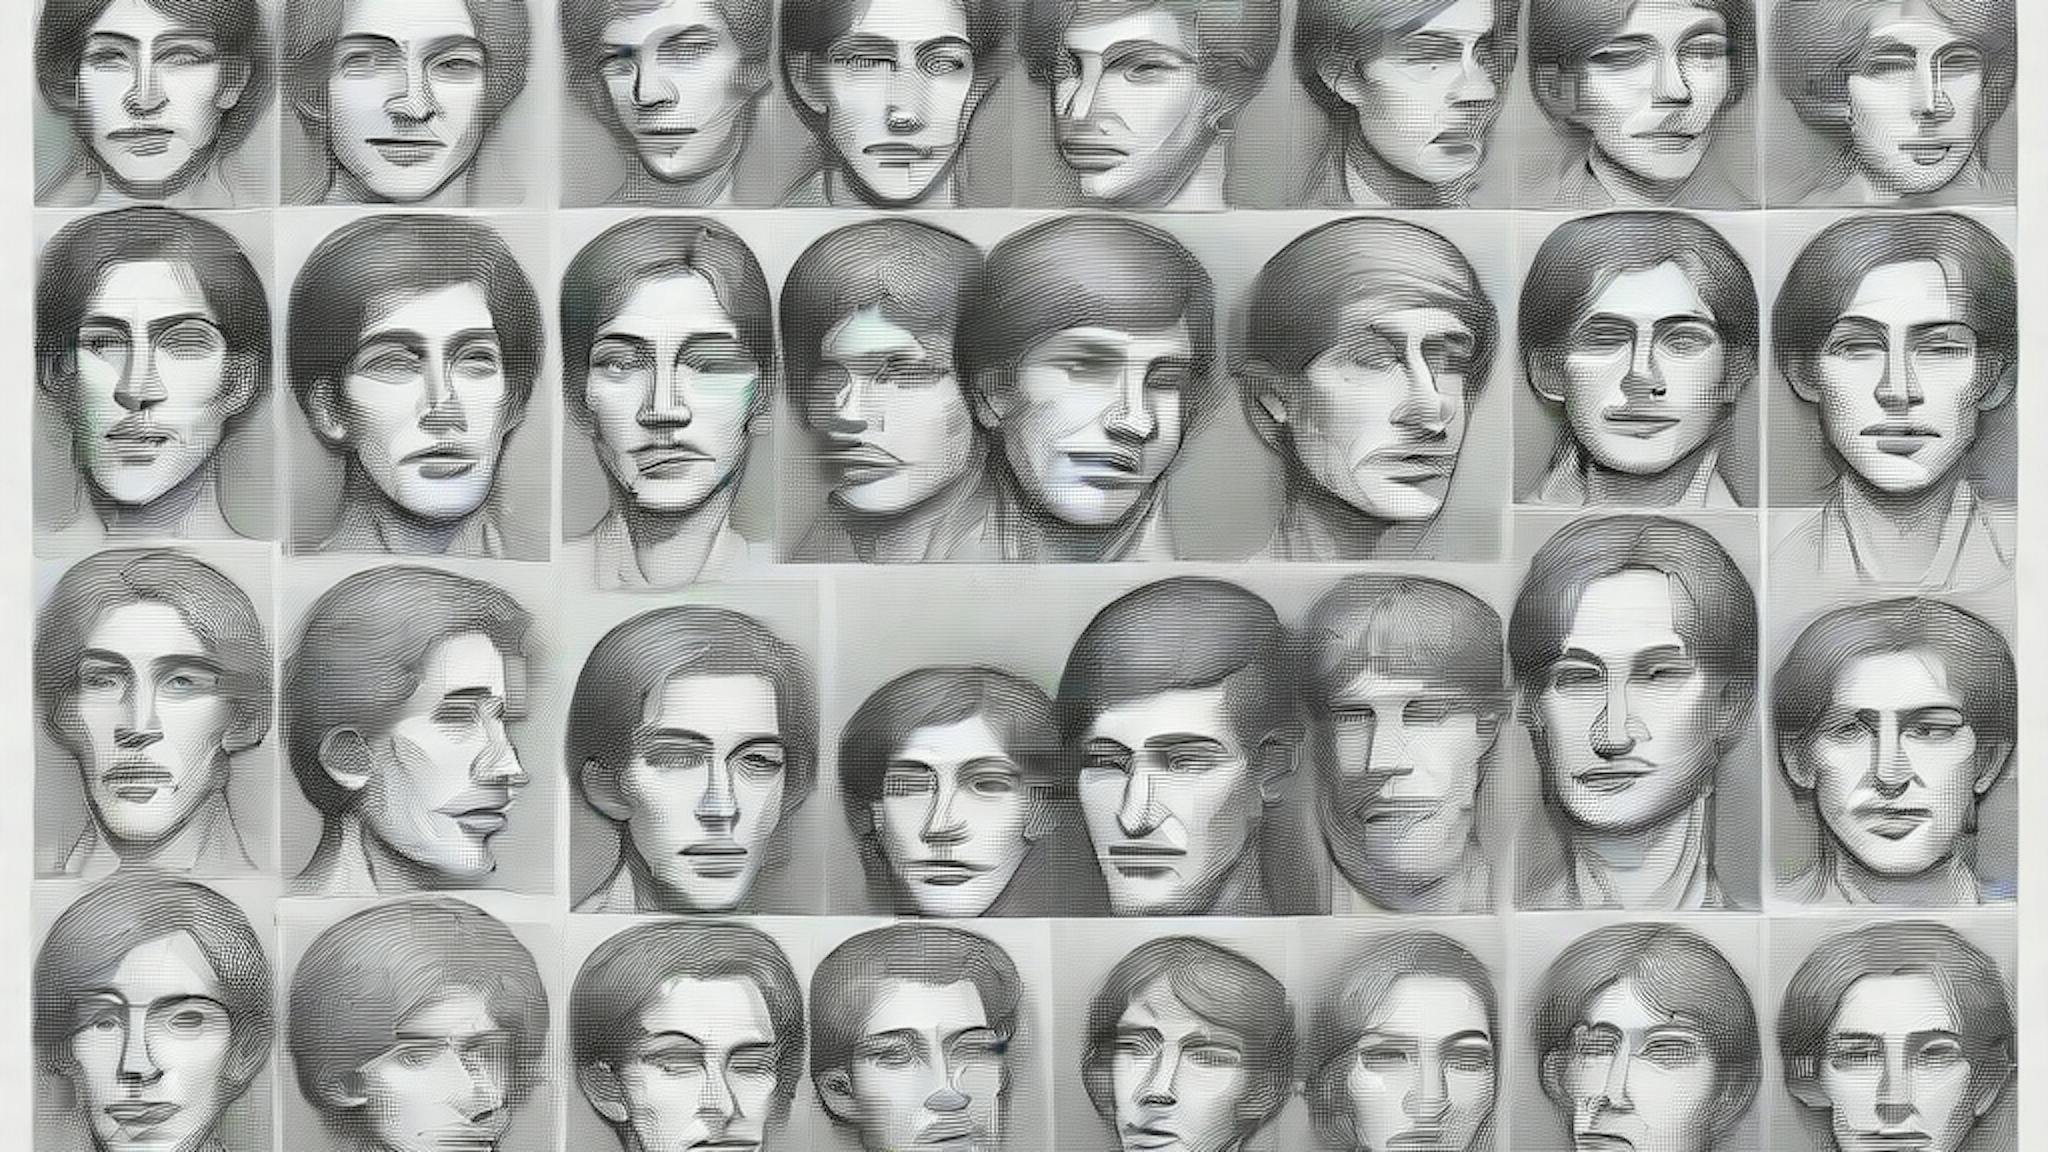 featured image - Tìm kiếm khuôn mặt do AI tạo ra trong thế giới hoang dã: Thảo luận, Lời cảm ơn và Tài liệu tham khảo